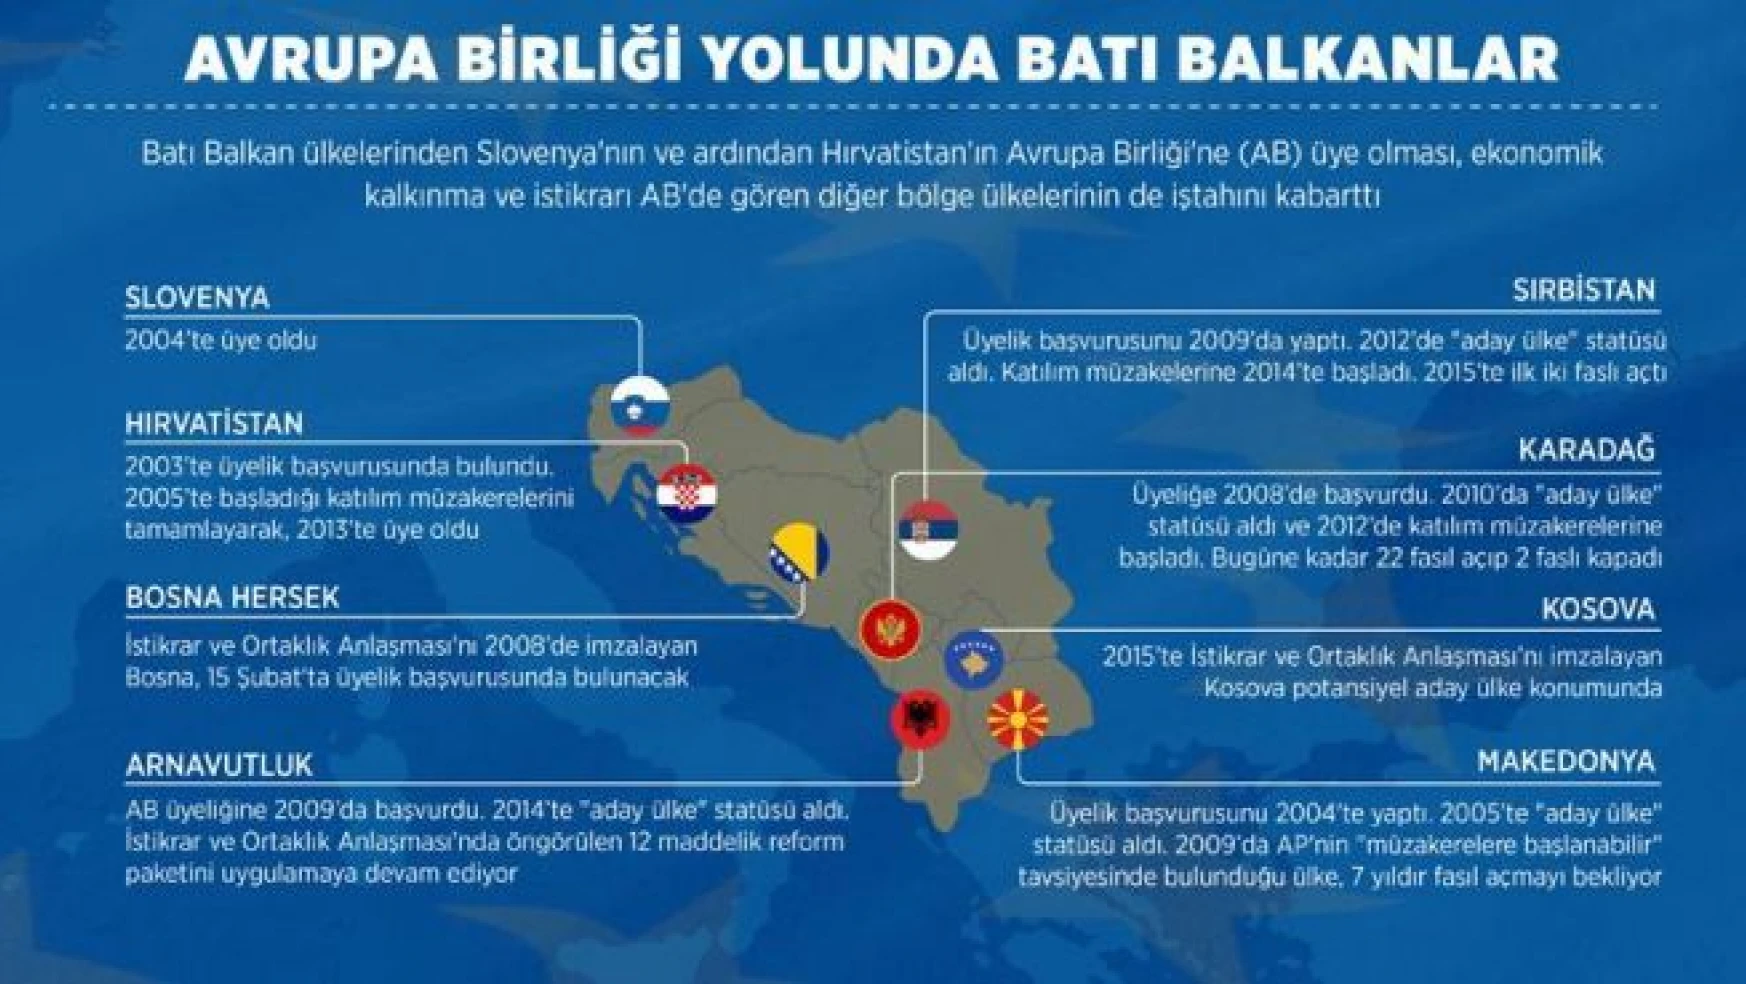 Avrupa Birliği yolunda Batı Balkanlar